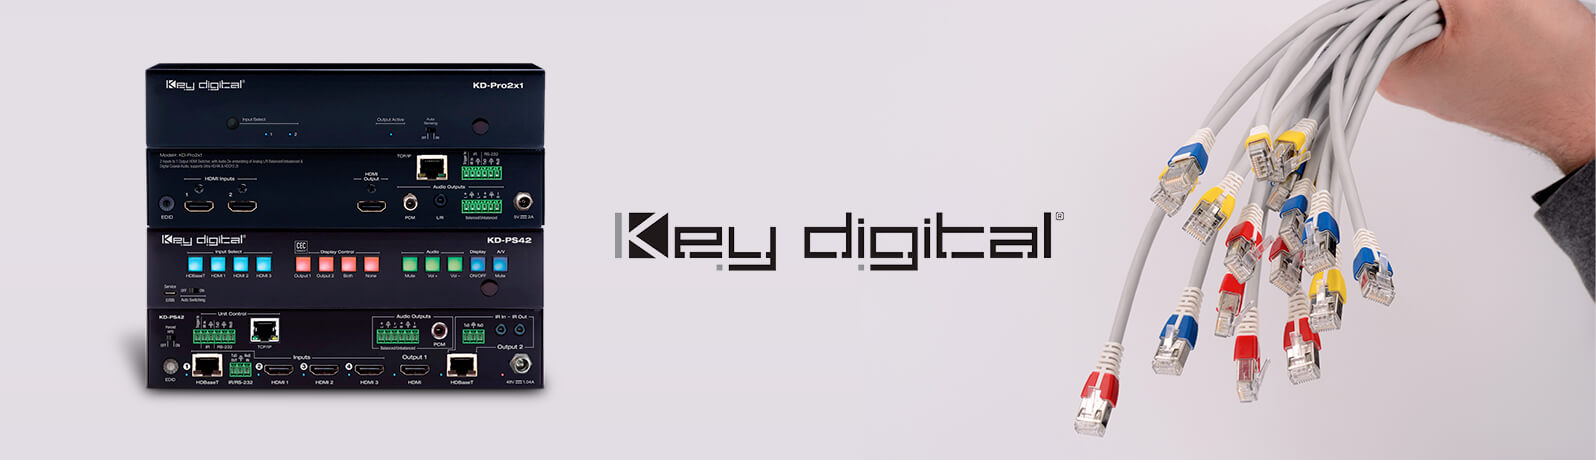 Key Digital
